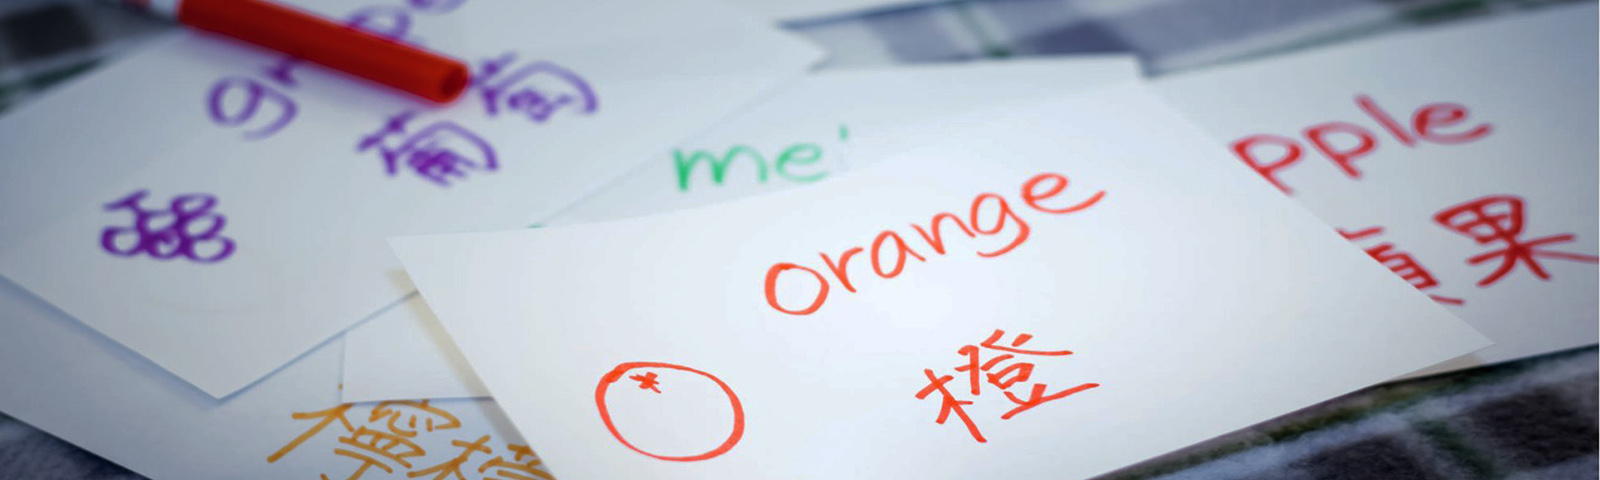 Чтобы выучить китайский, учите иероглифы, как китайцы